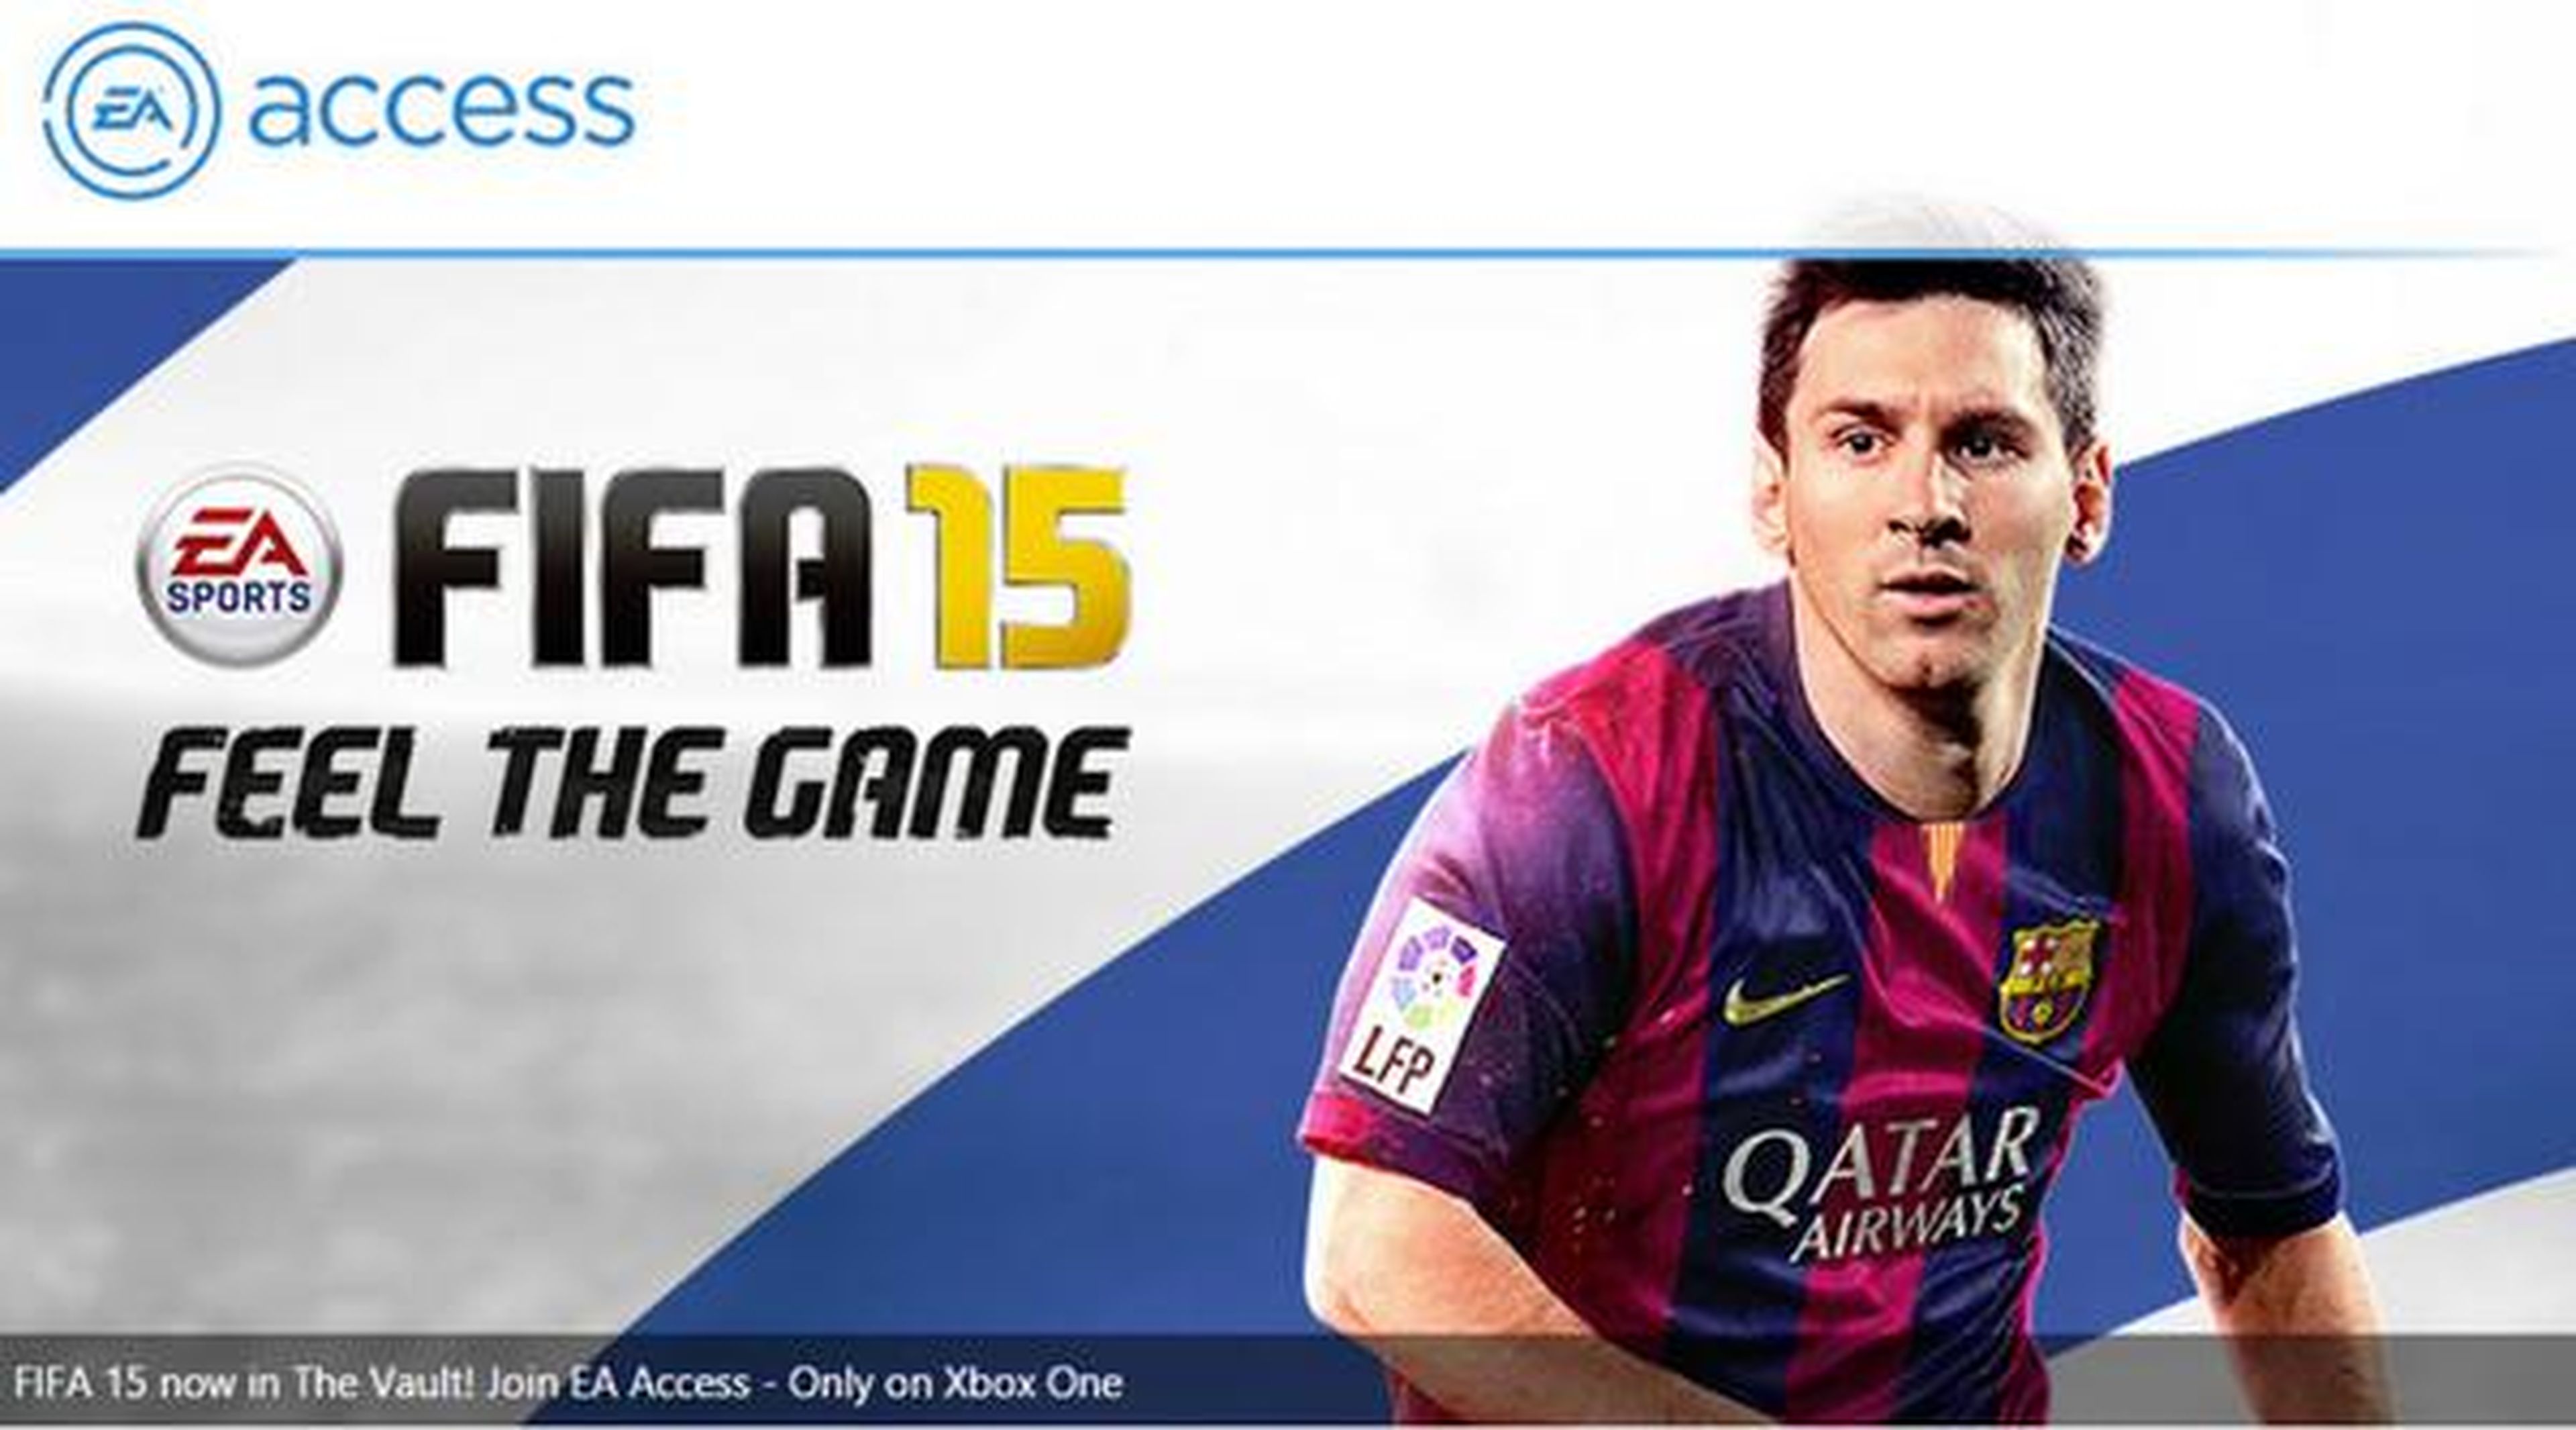 FIFA 15 llega a EA Access